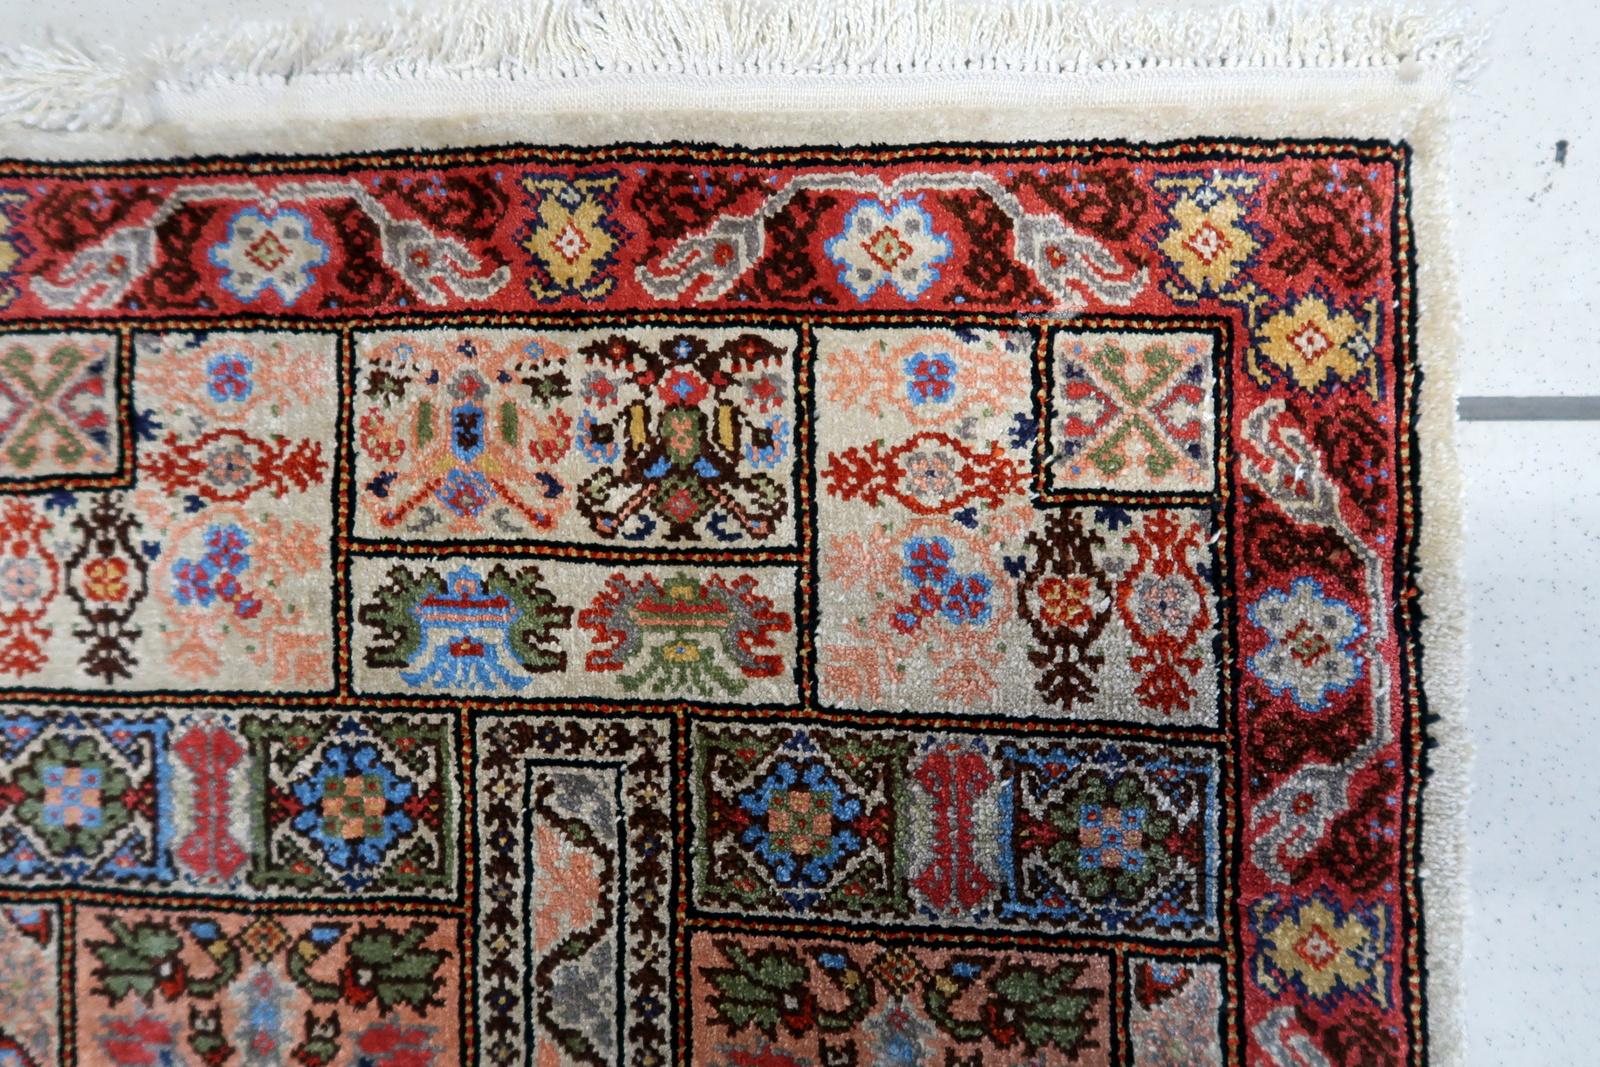 Tapis en soie tunisienne vintage fait à la main dans les années 1970. Cette splendide œuvre d'art mesure 1,6 pied sur 3,7 pieds et respire l'élégance intemporelle.

Description du produit :
Design/One :
Le tapis présente un mélange harmonieux de